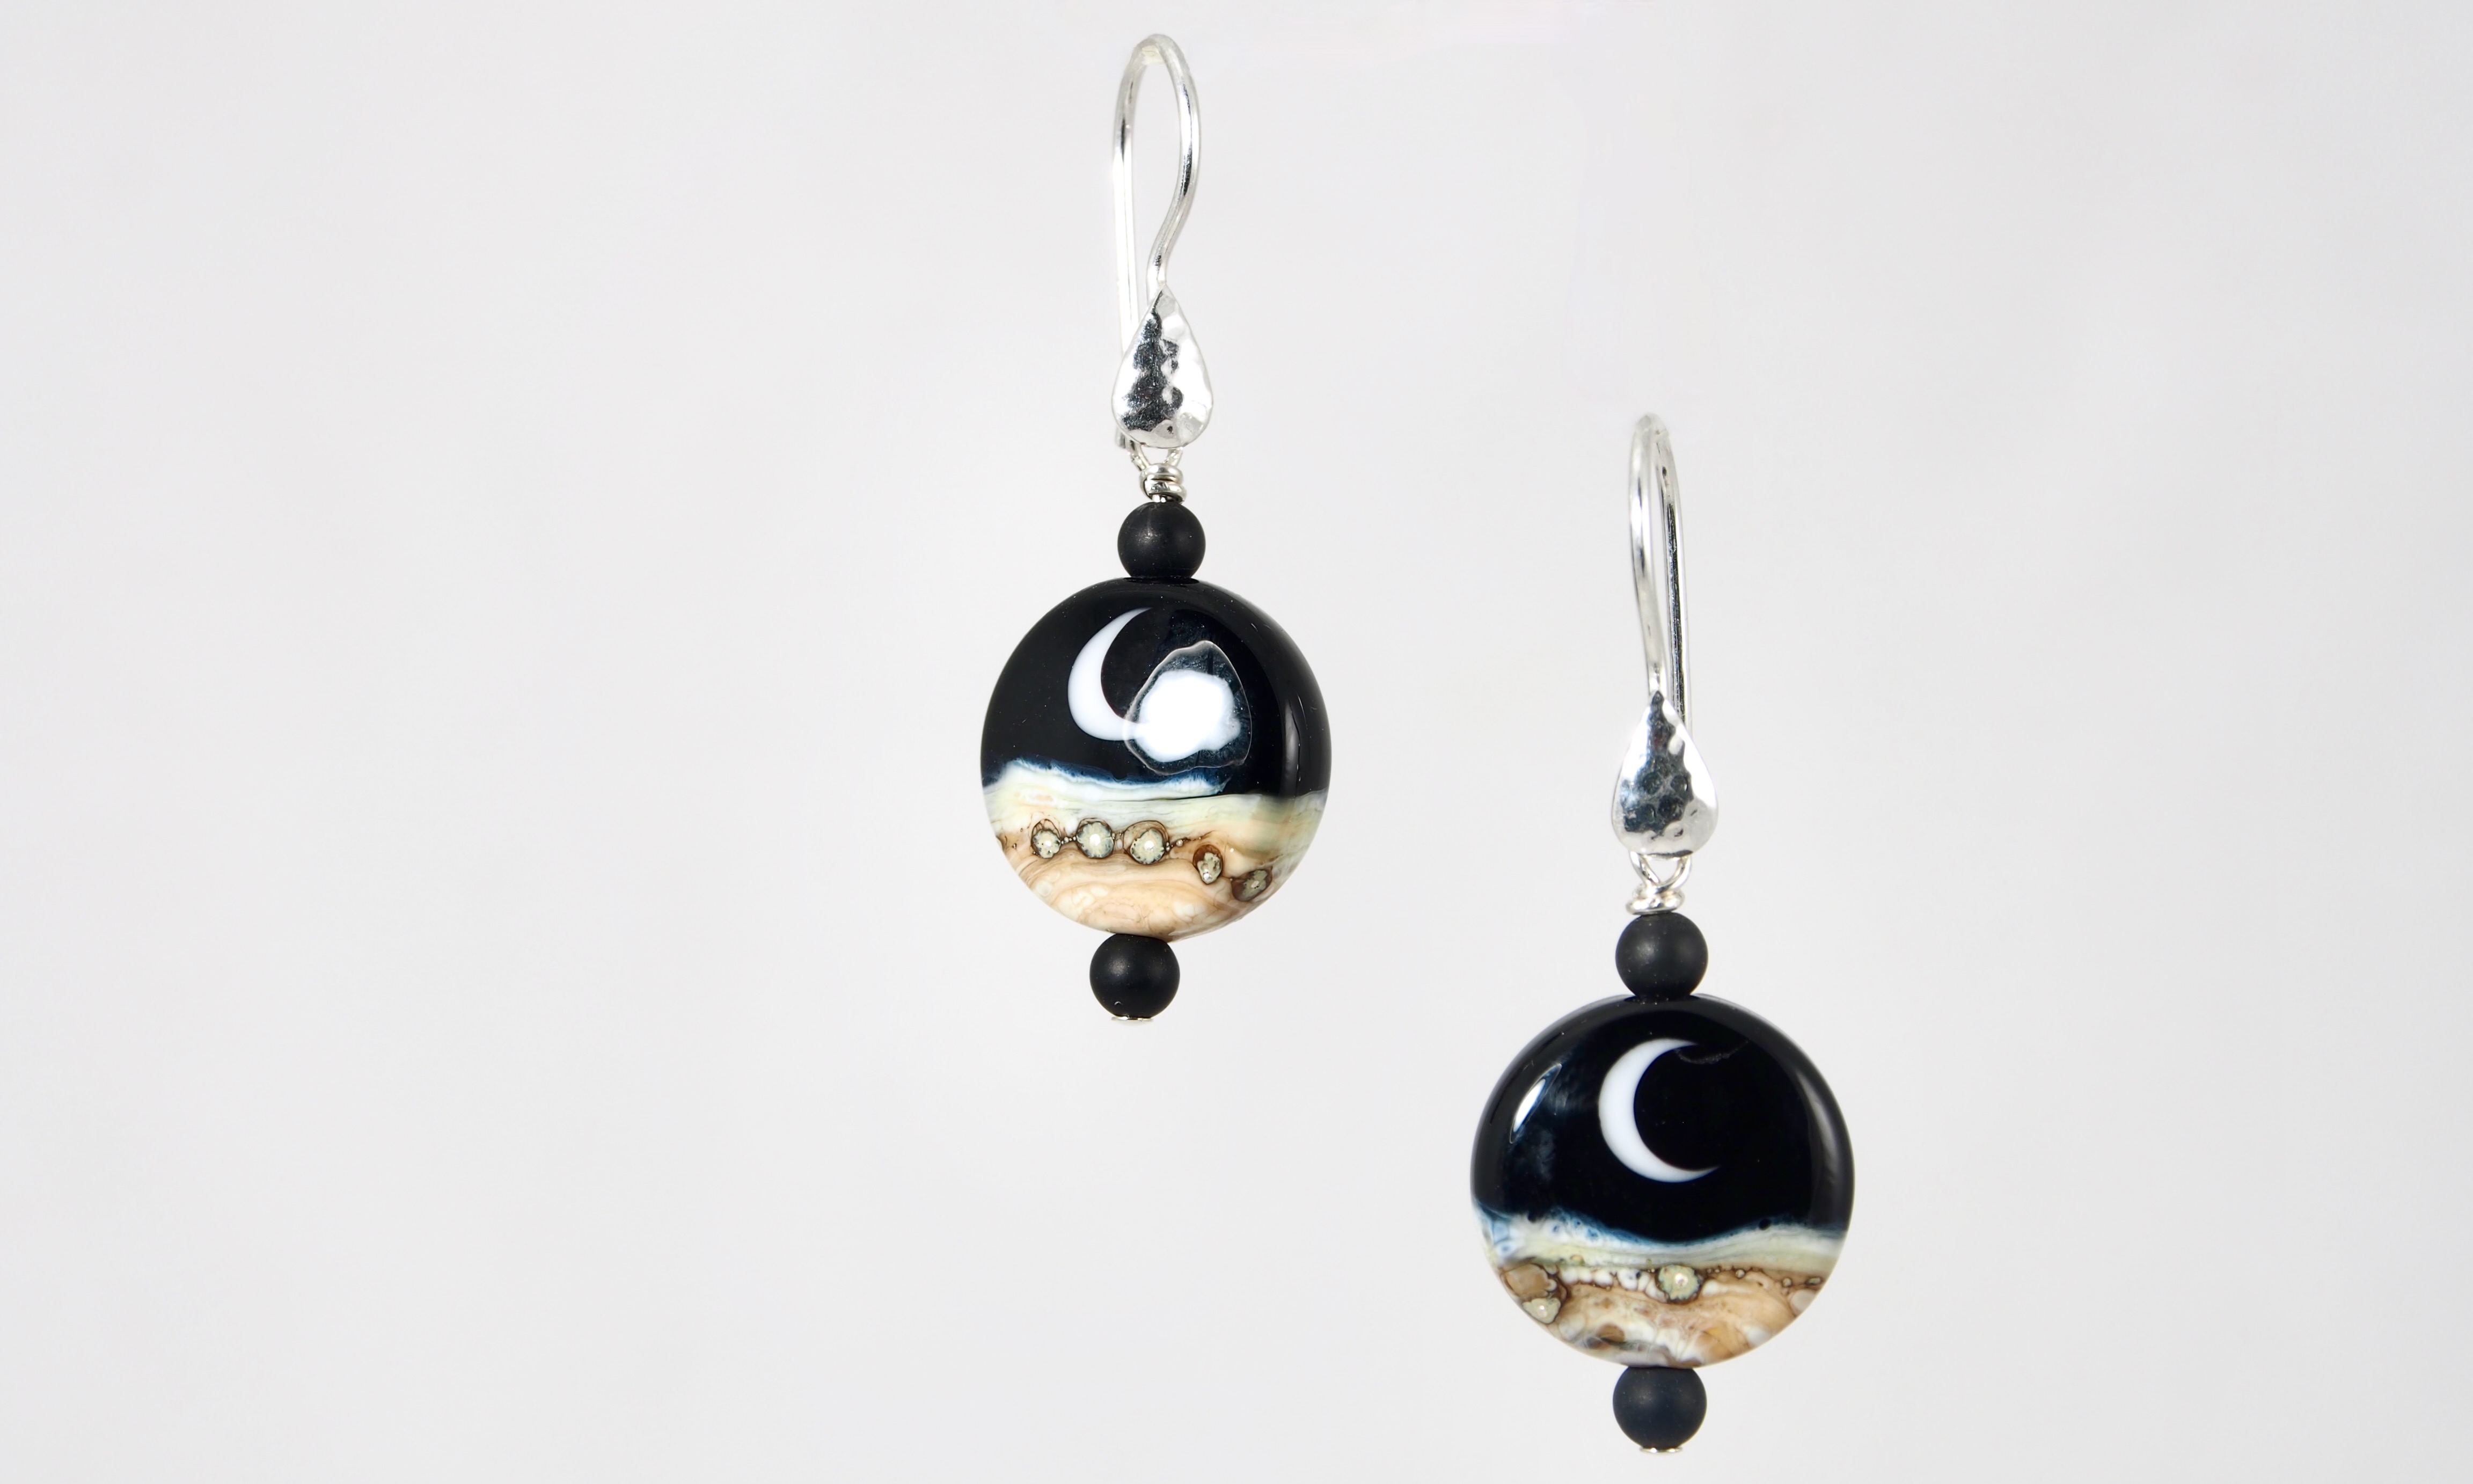 Moonrising Earrings - Handmade Glass Beads/Sterling